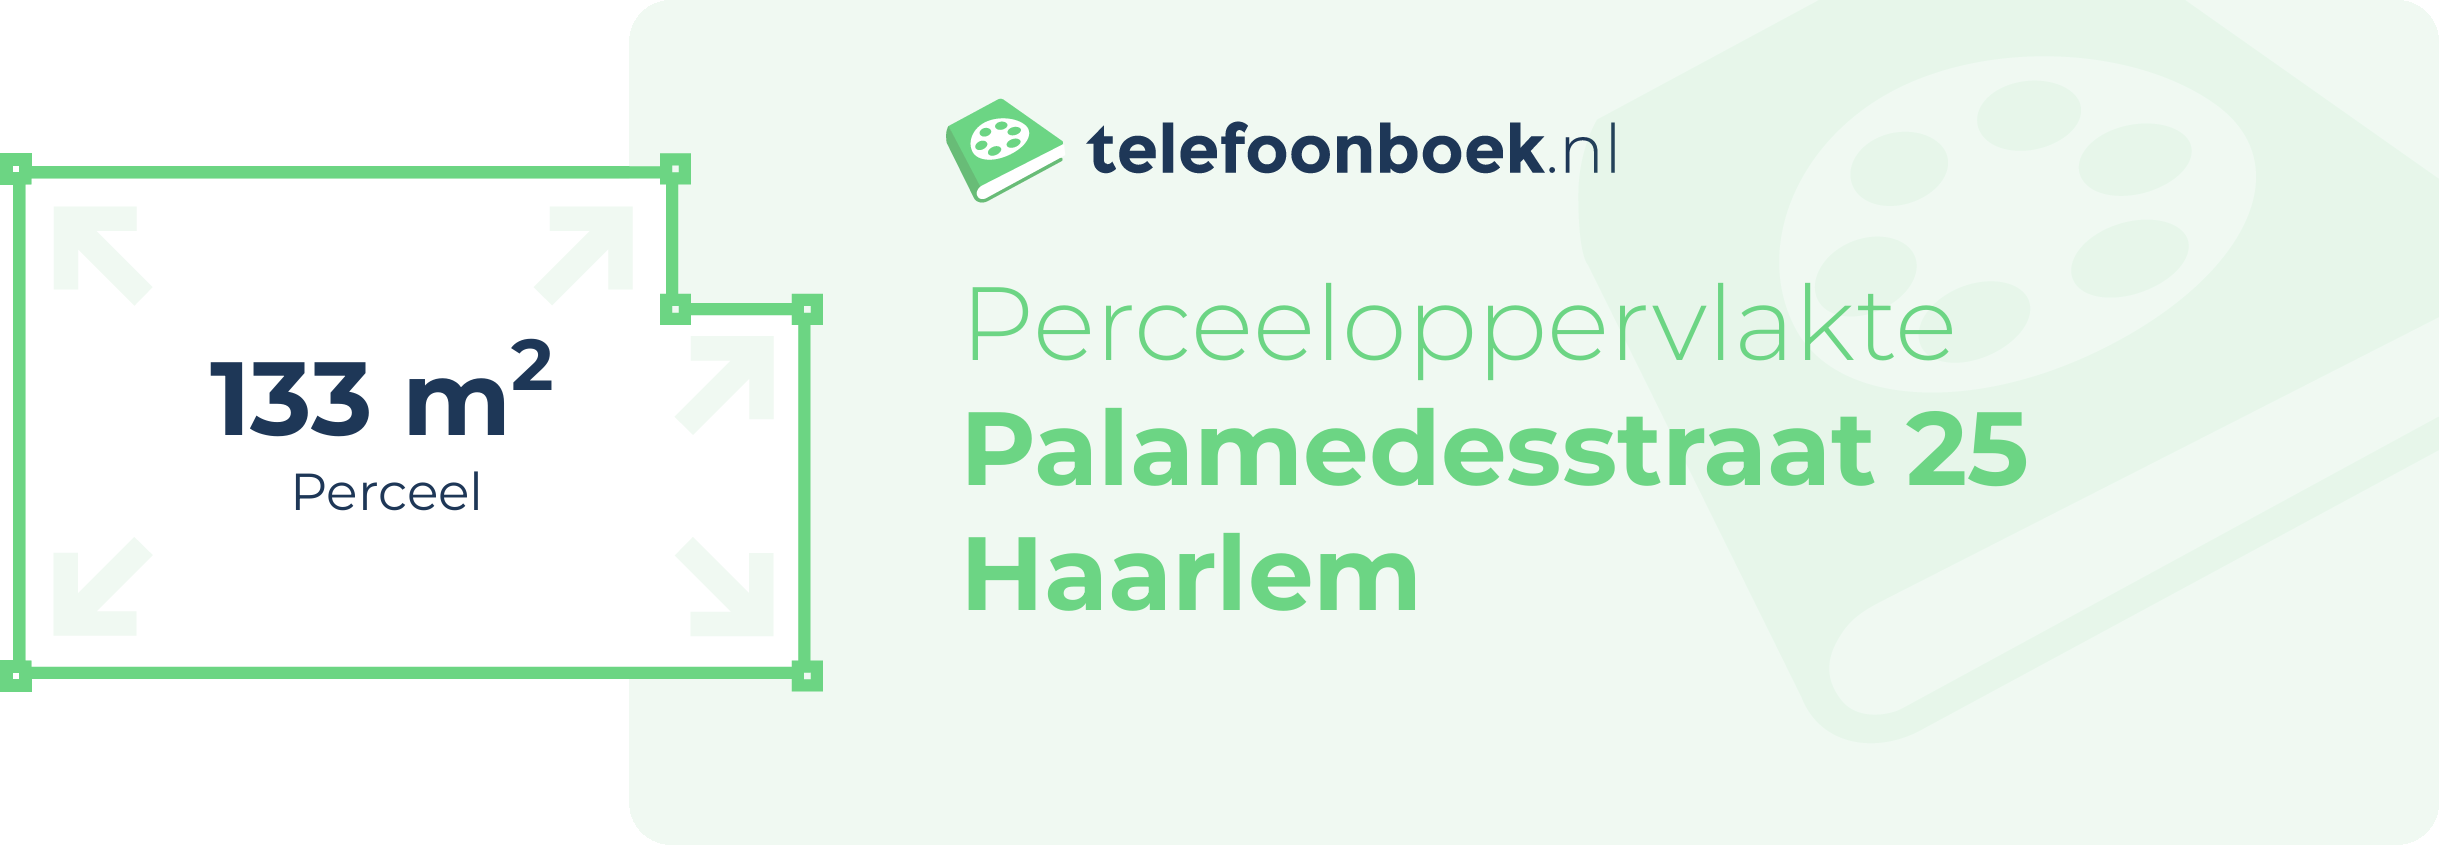 Perceeloppervlakte Palamedesstraat 25 Haarlem